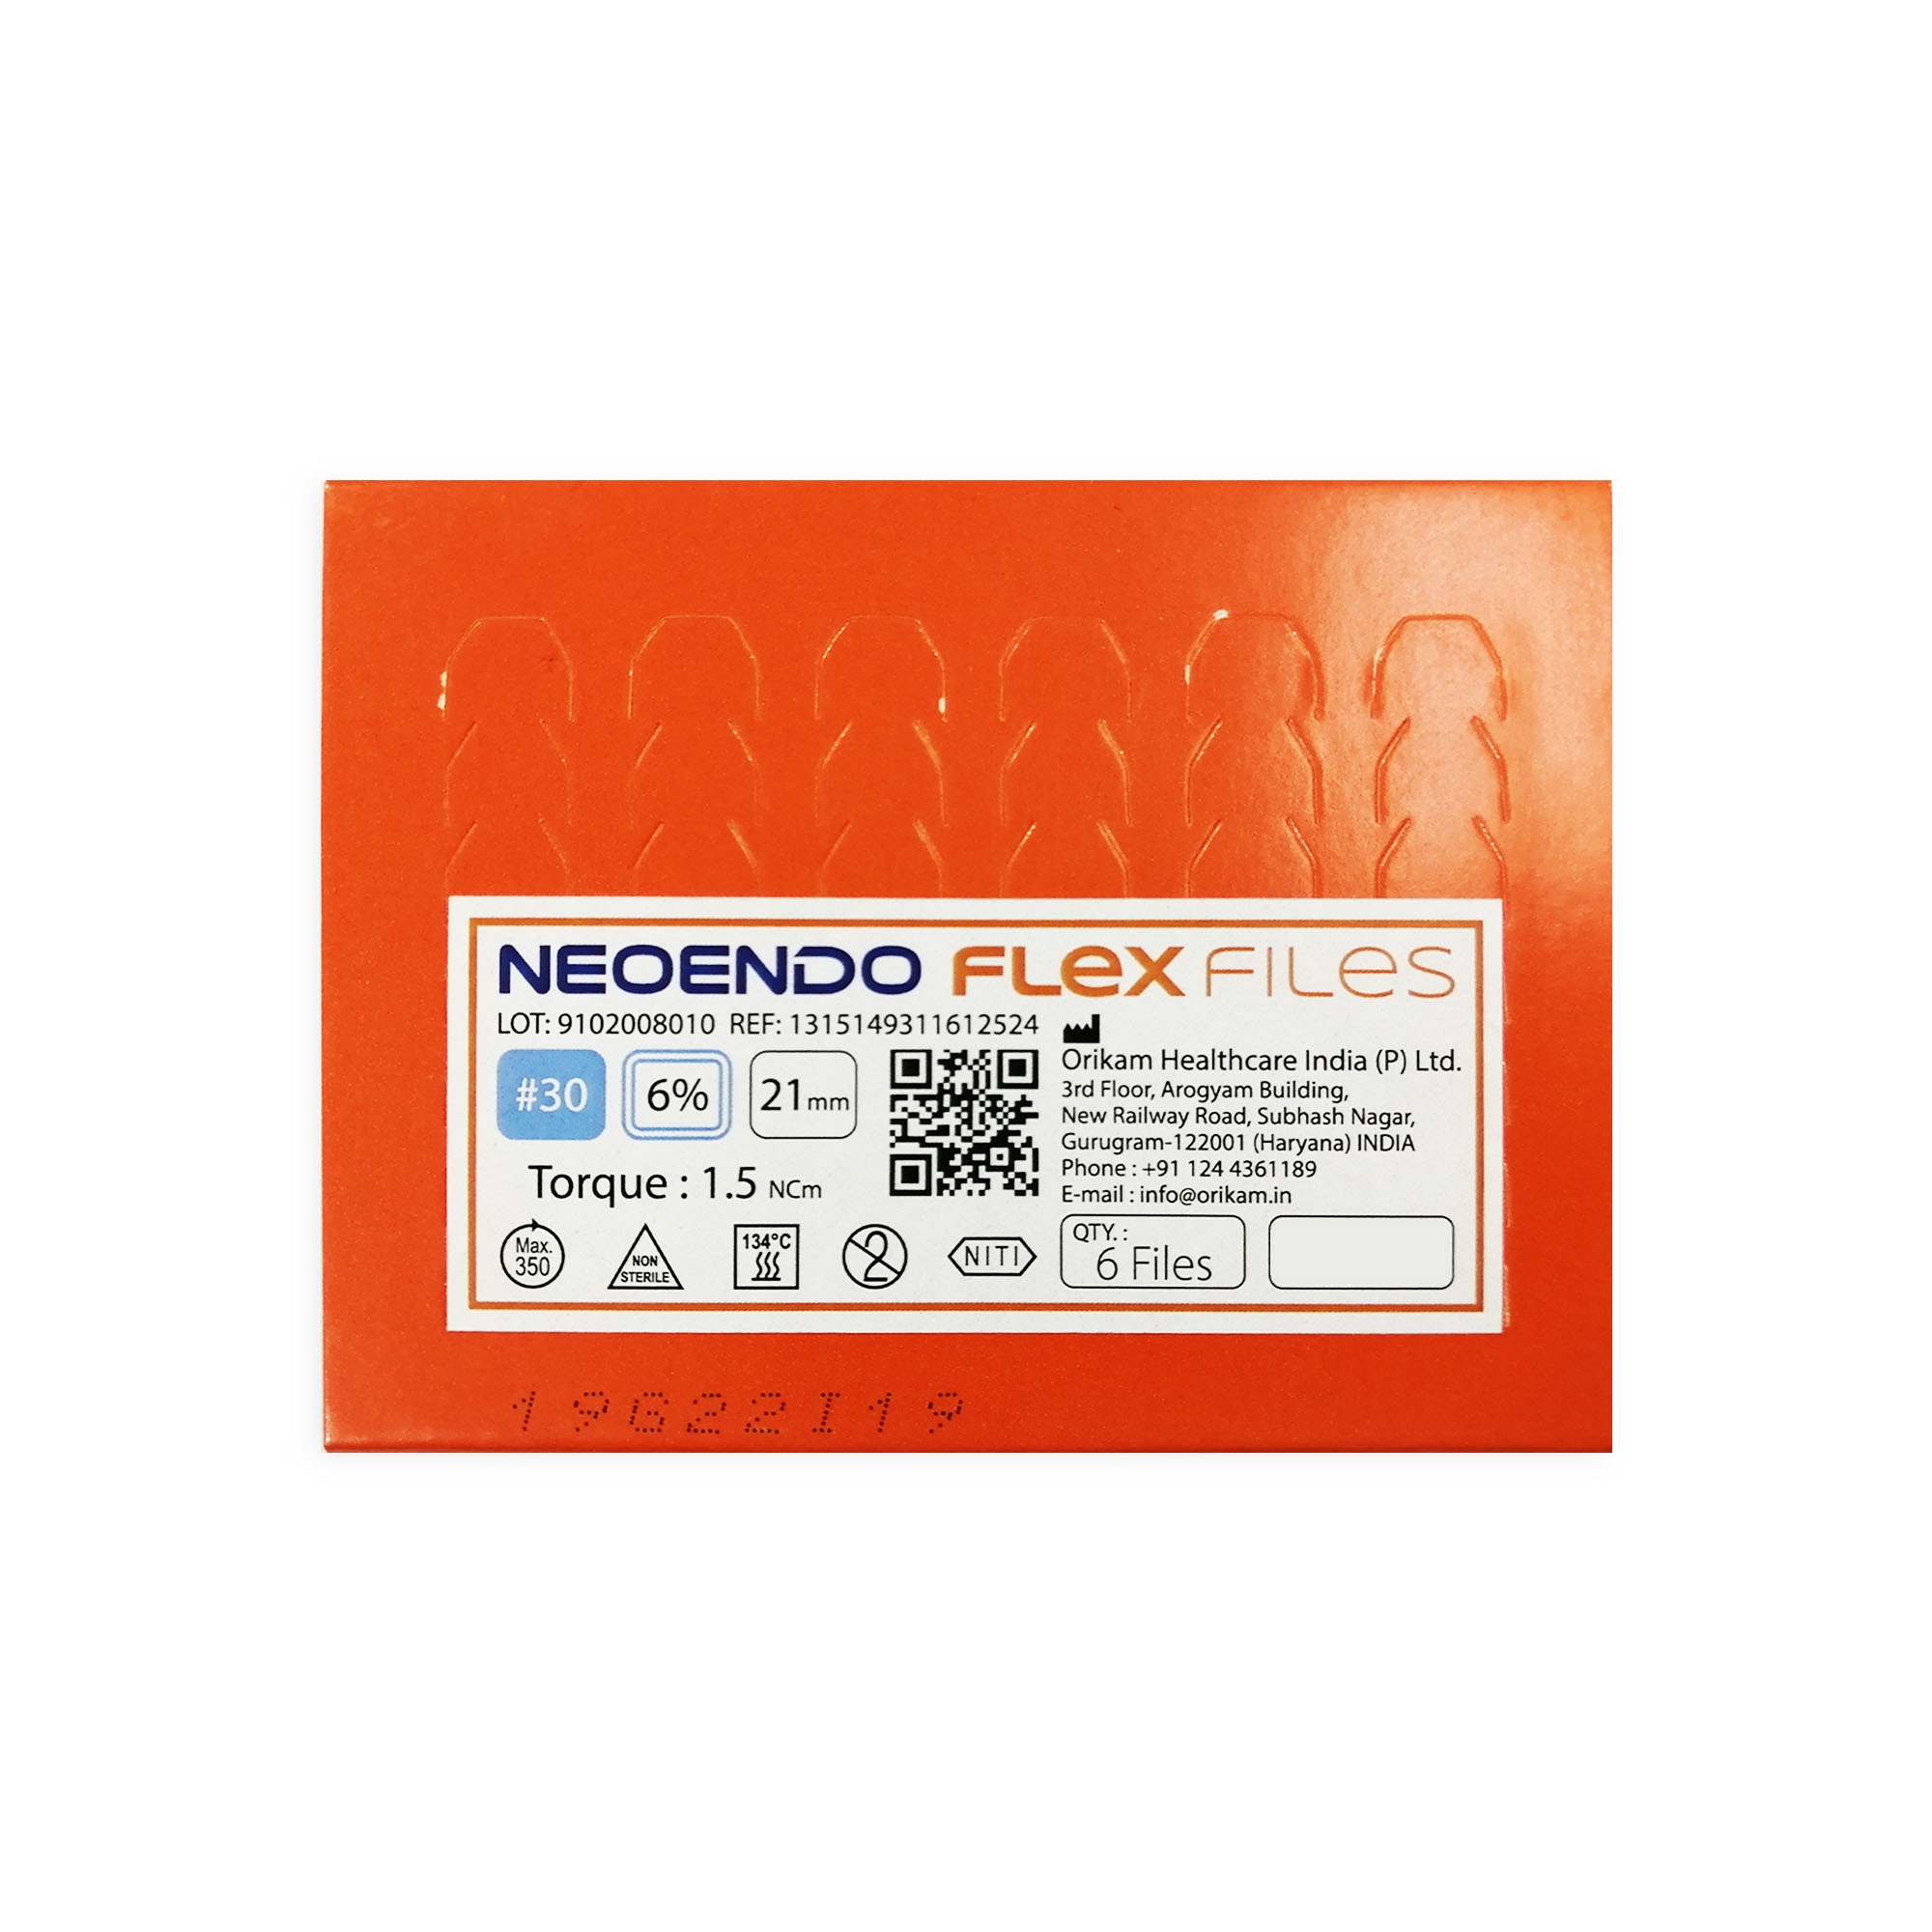 NeoEndo Flex Files 21mm 20/6 Endo Rotary Files